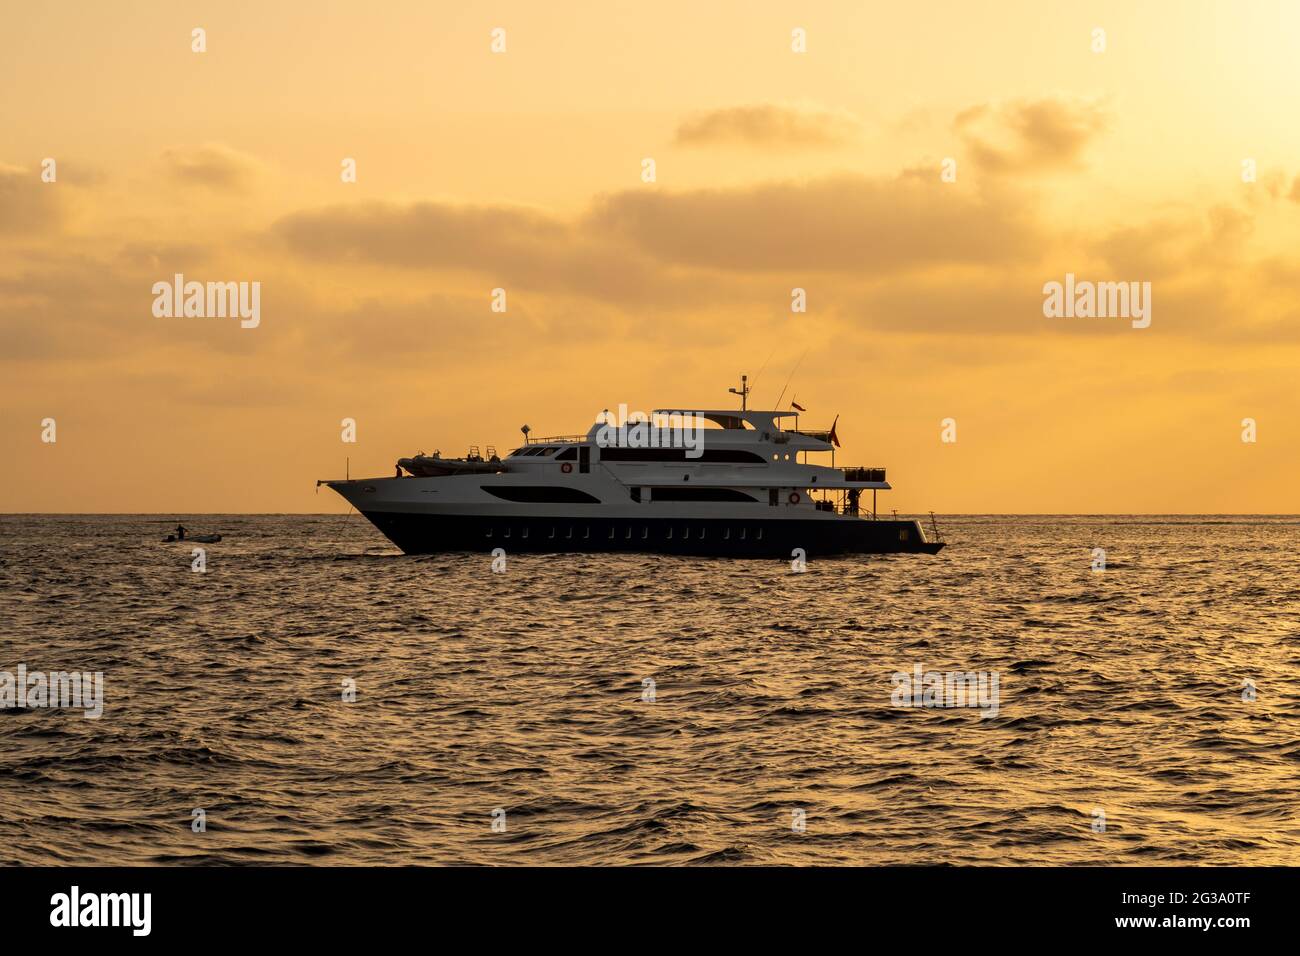 Dunkle Silhouette eines Tauchbootes mit orangefarbenem Sonnenuntergang über dem Roten Meer, bewölktem Himmel und ruhigem Meer. Stockfoto